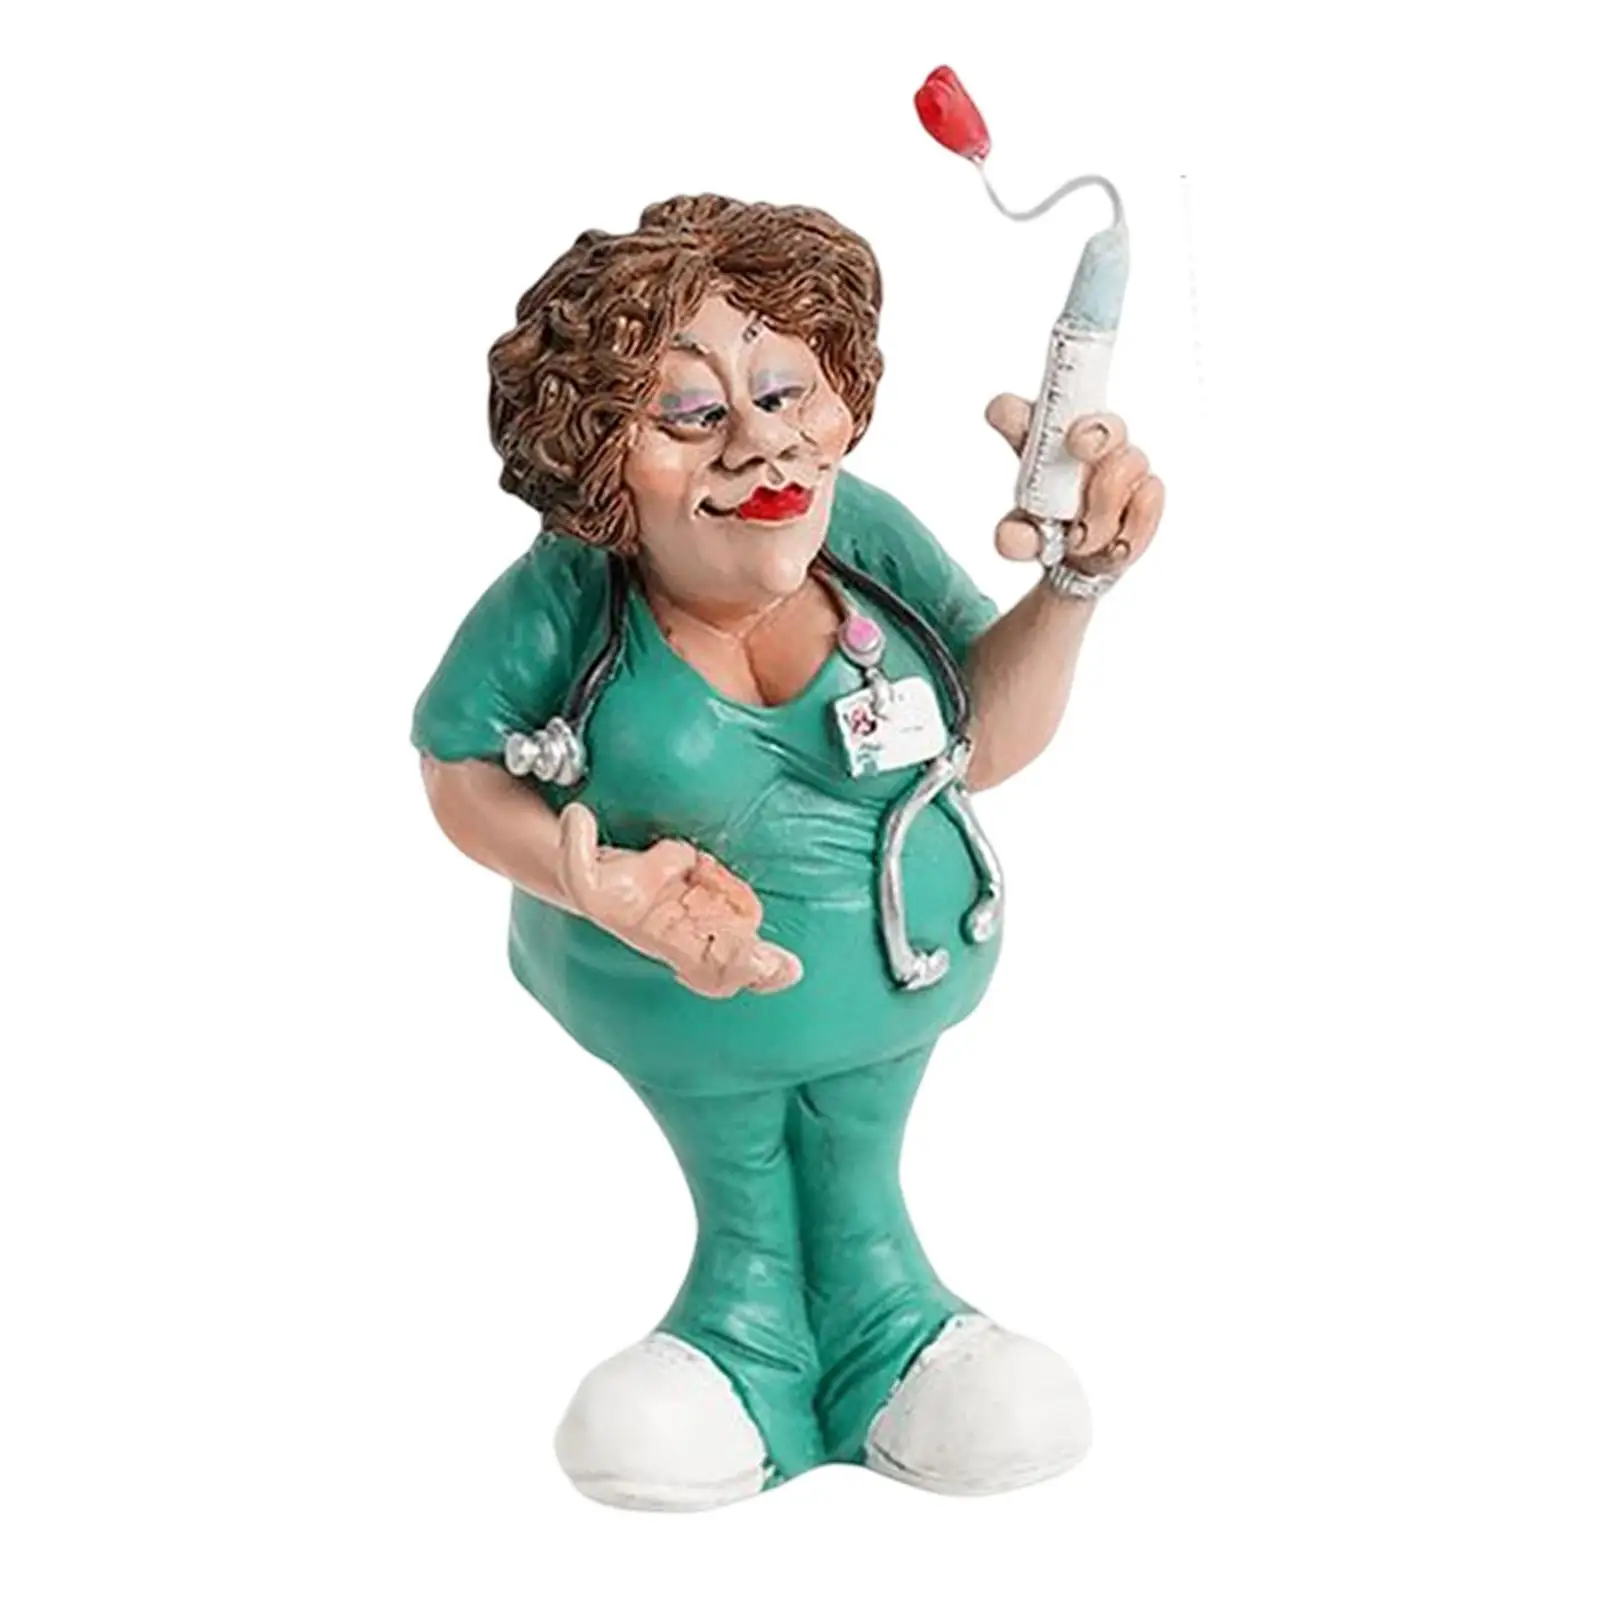 Doctor Statues Figurines Nurse Decorative Women Resin Sculpture for Office Bookshelf